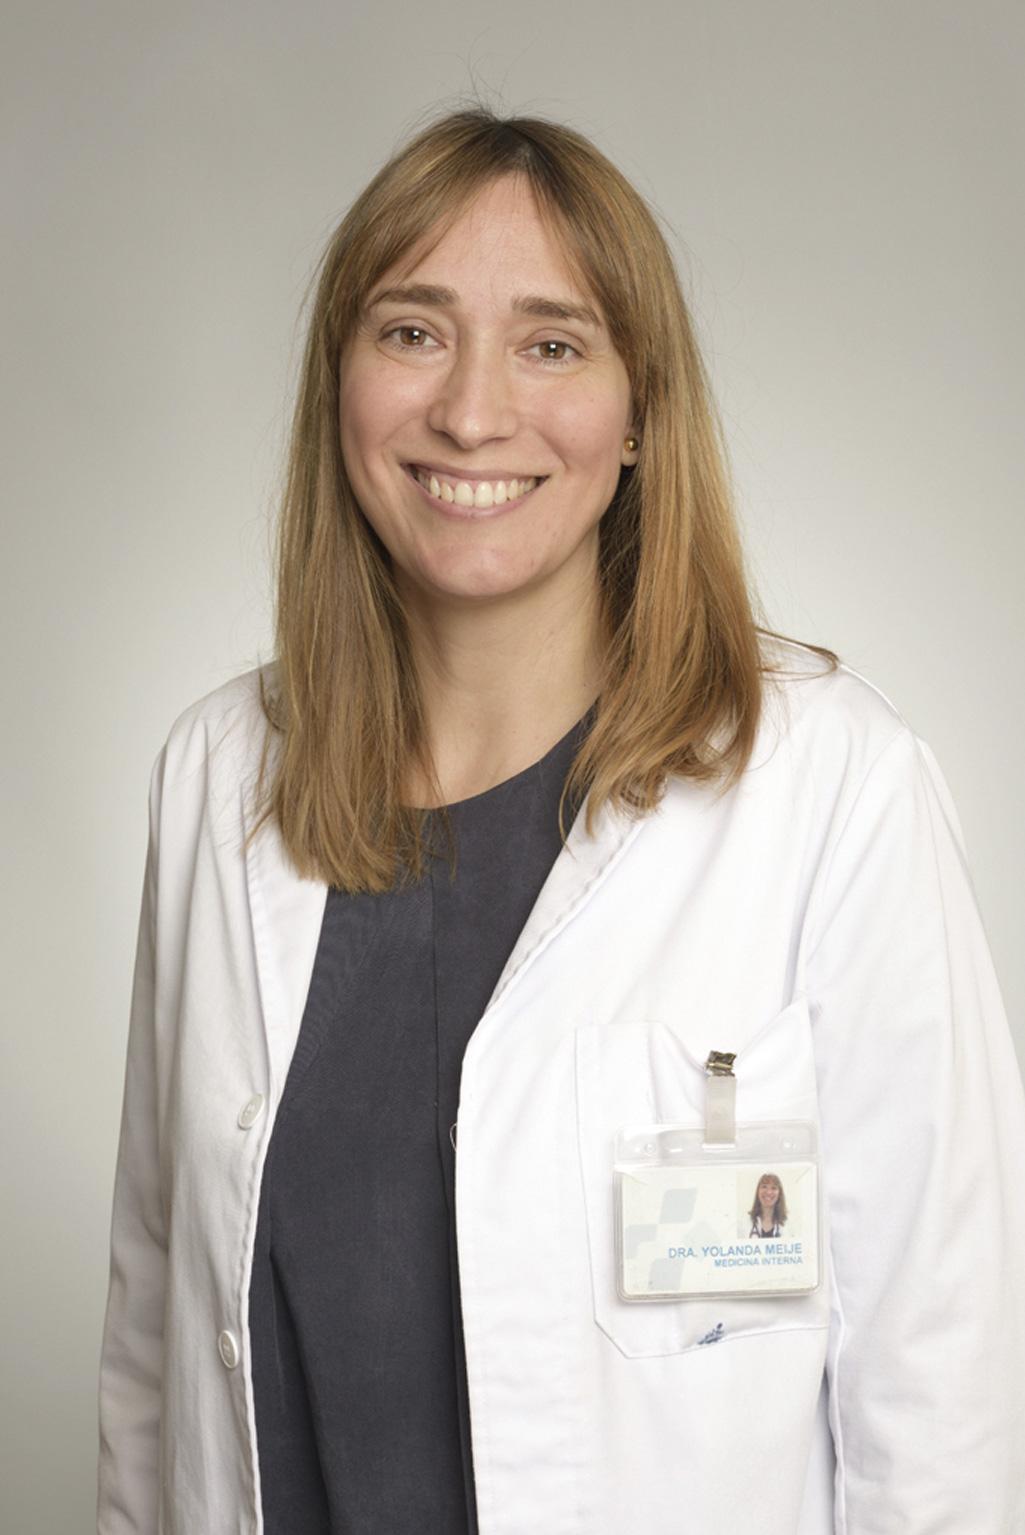 Dra. Yolanda Meije, jefa del Servicio de Medicina Interna del Hospital de Barcelona